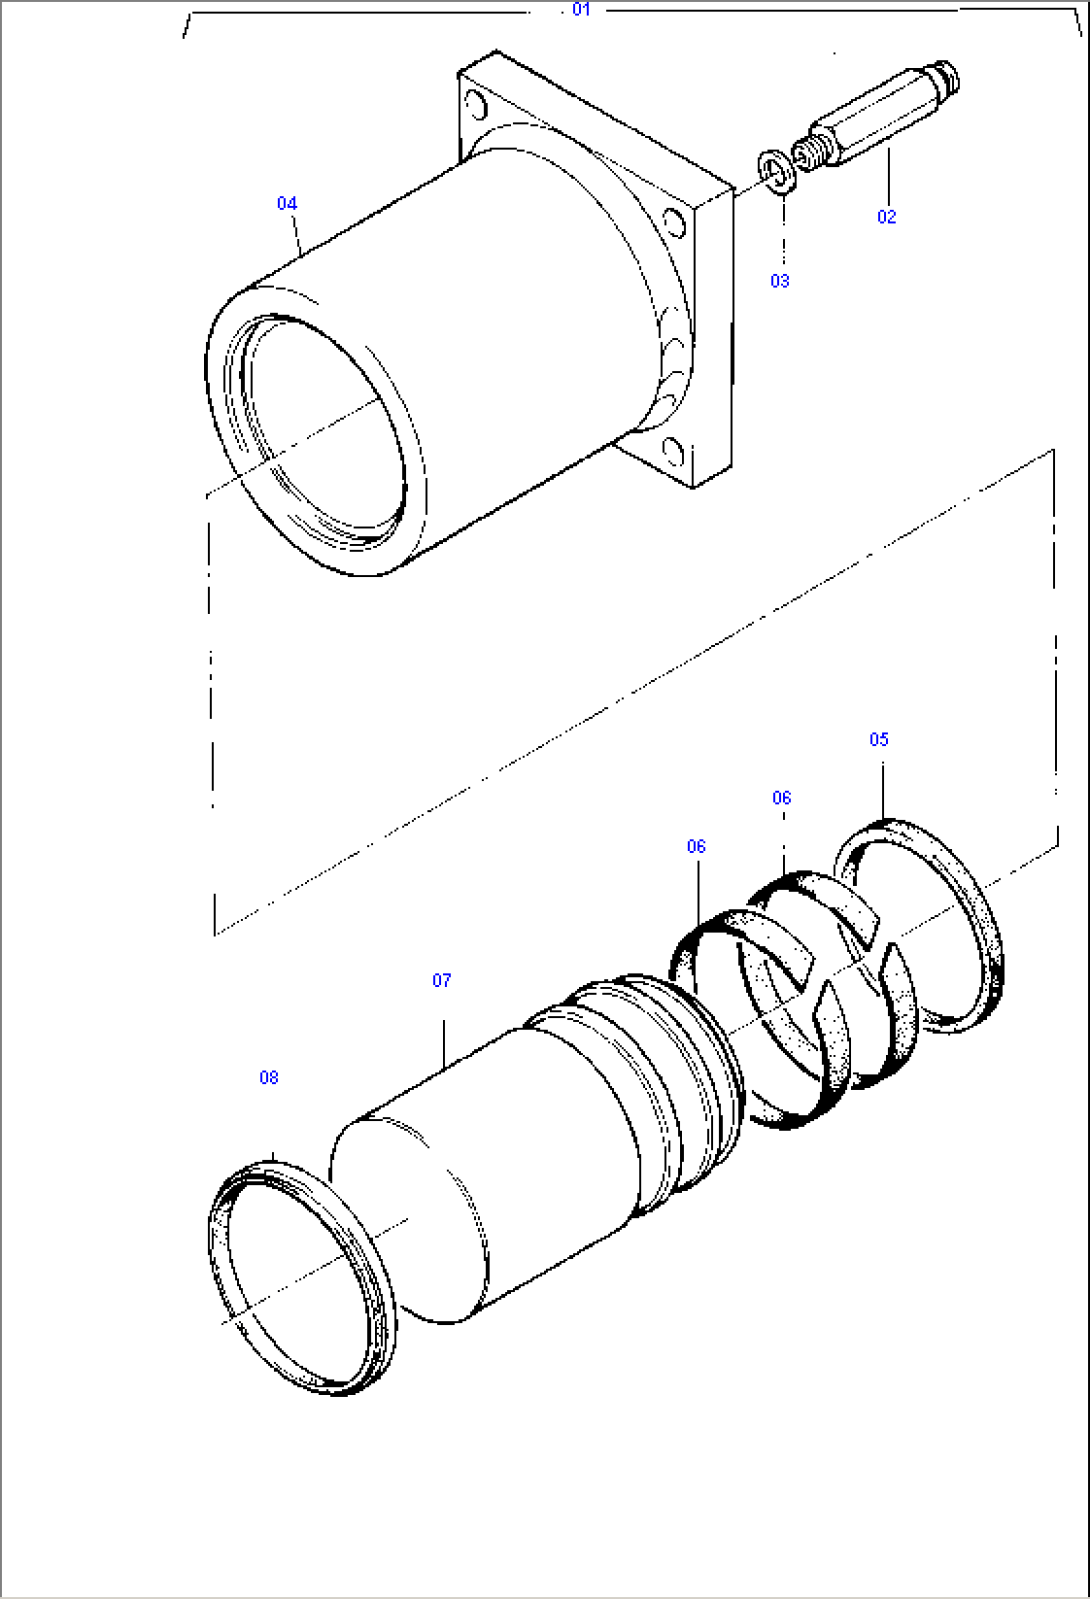 Track Adjuster (Grease Tensioning Cylinder)